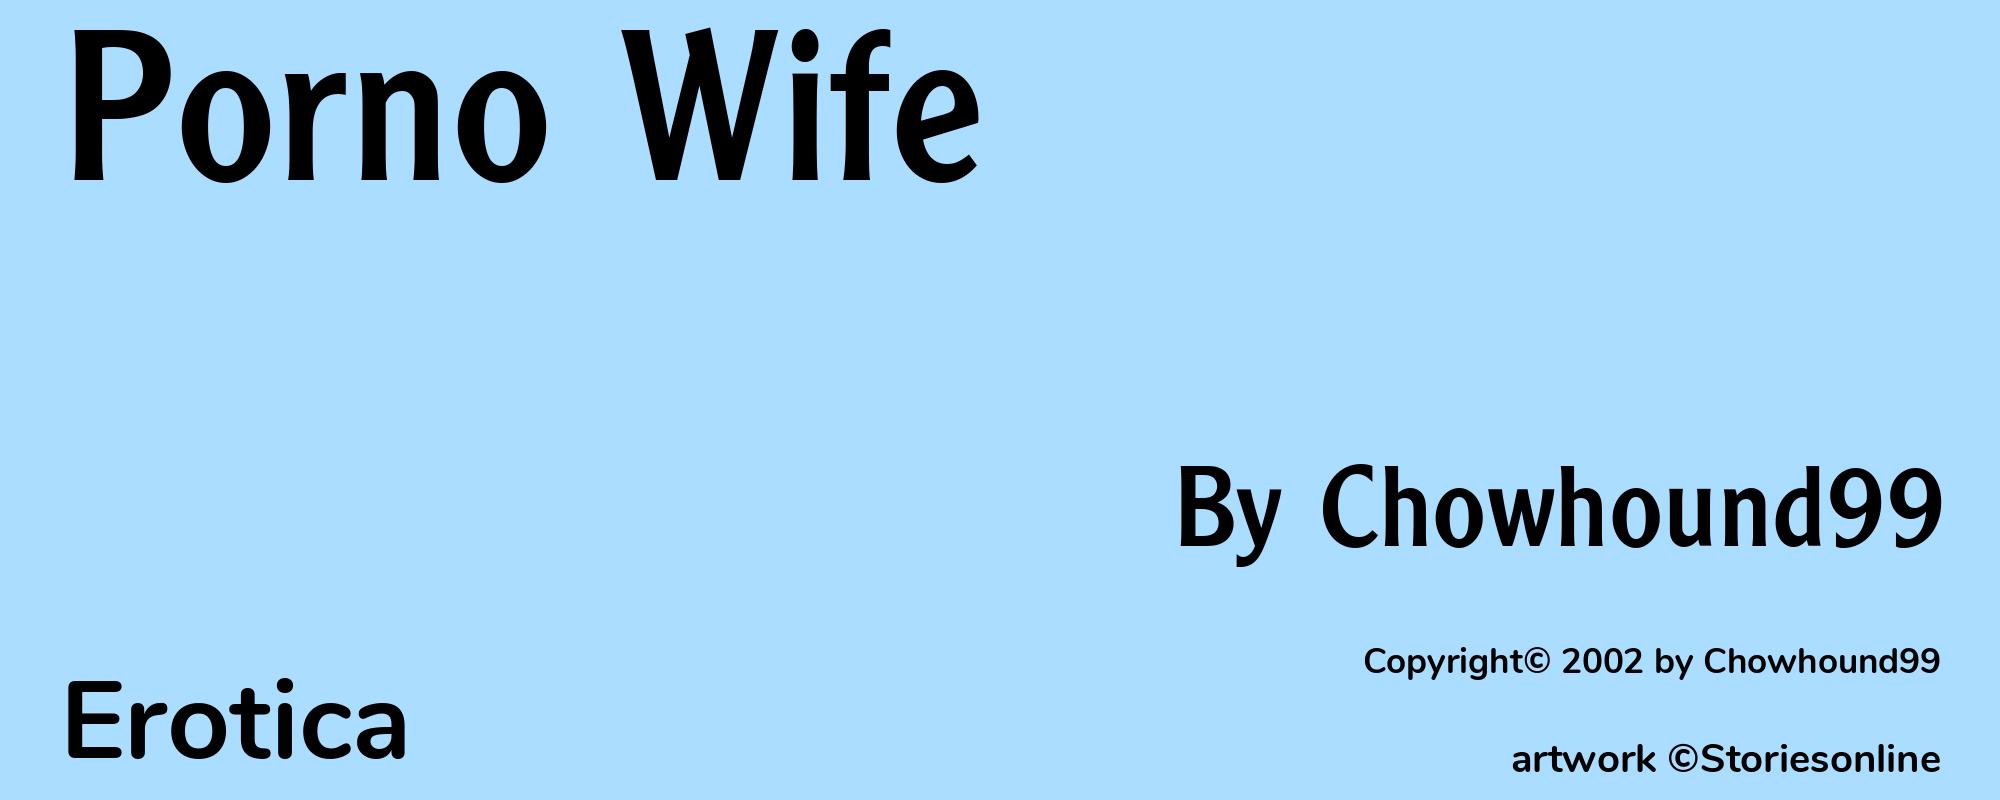 Porno Wife - Cover